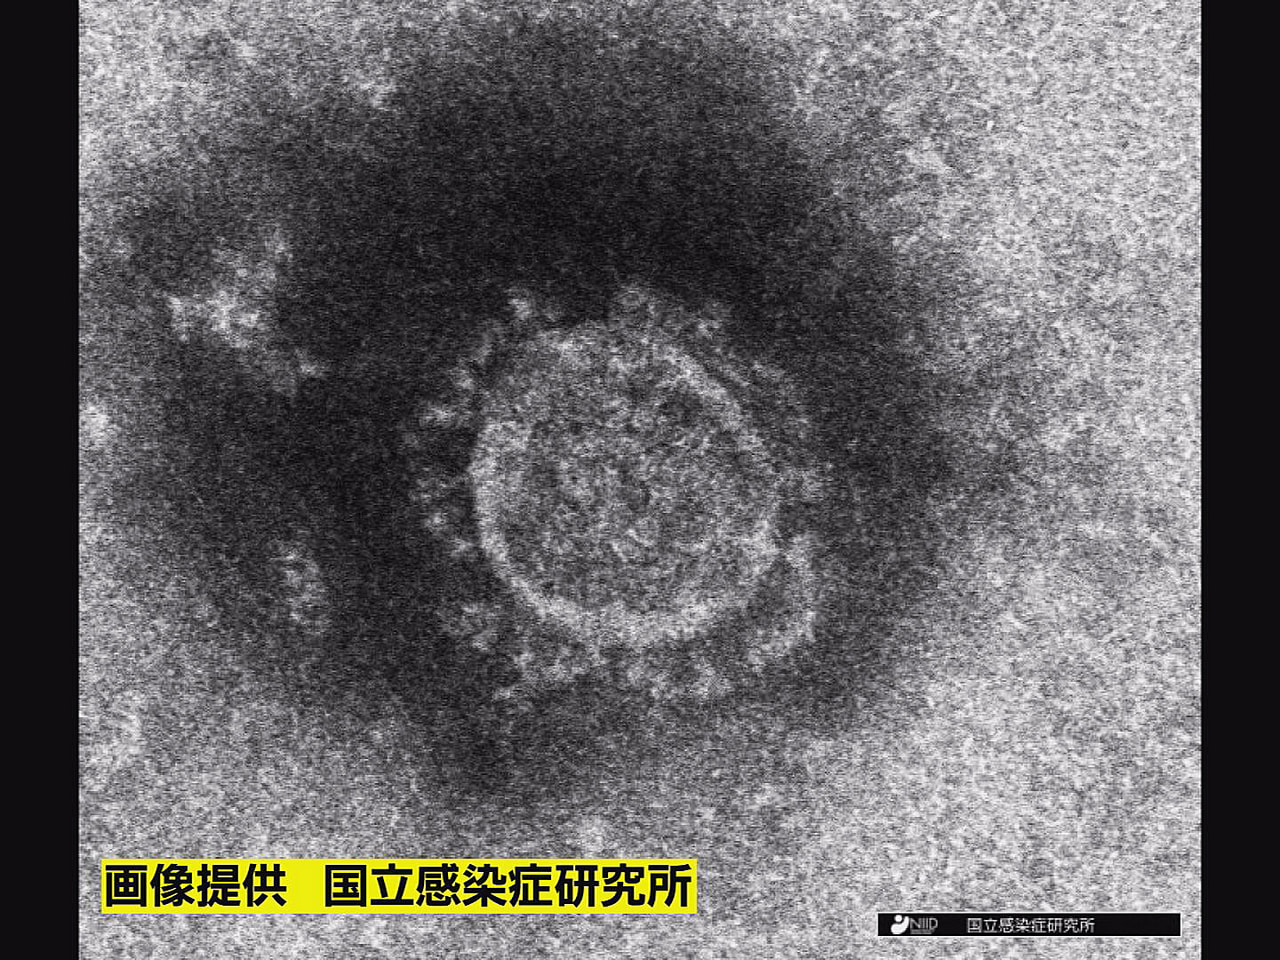 岐阜県は４日、新型コロナウイルスの新規感染者が３４６人確認されたと発表しました。...